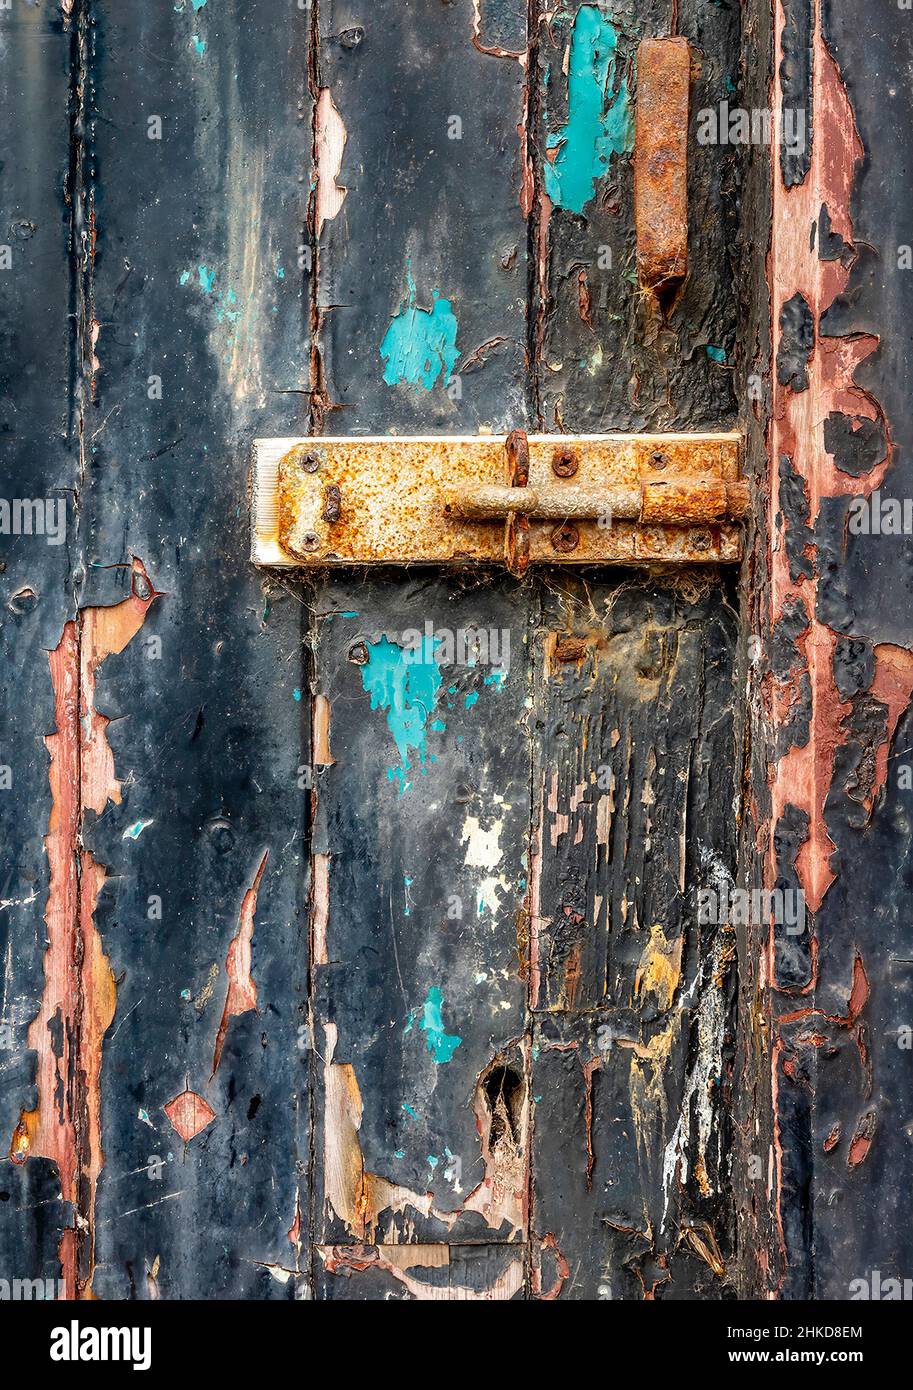 parte de una puerta de madera vieja con pintura descascarada y perno oxidado. Foto de stock